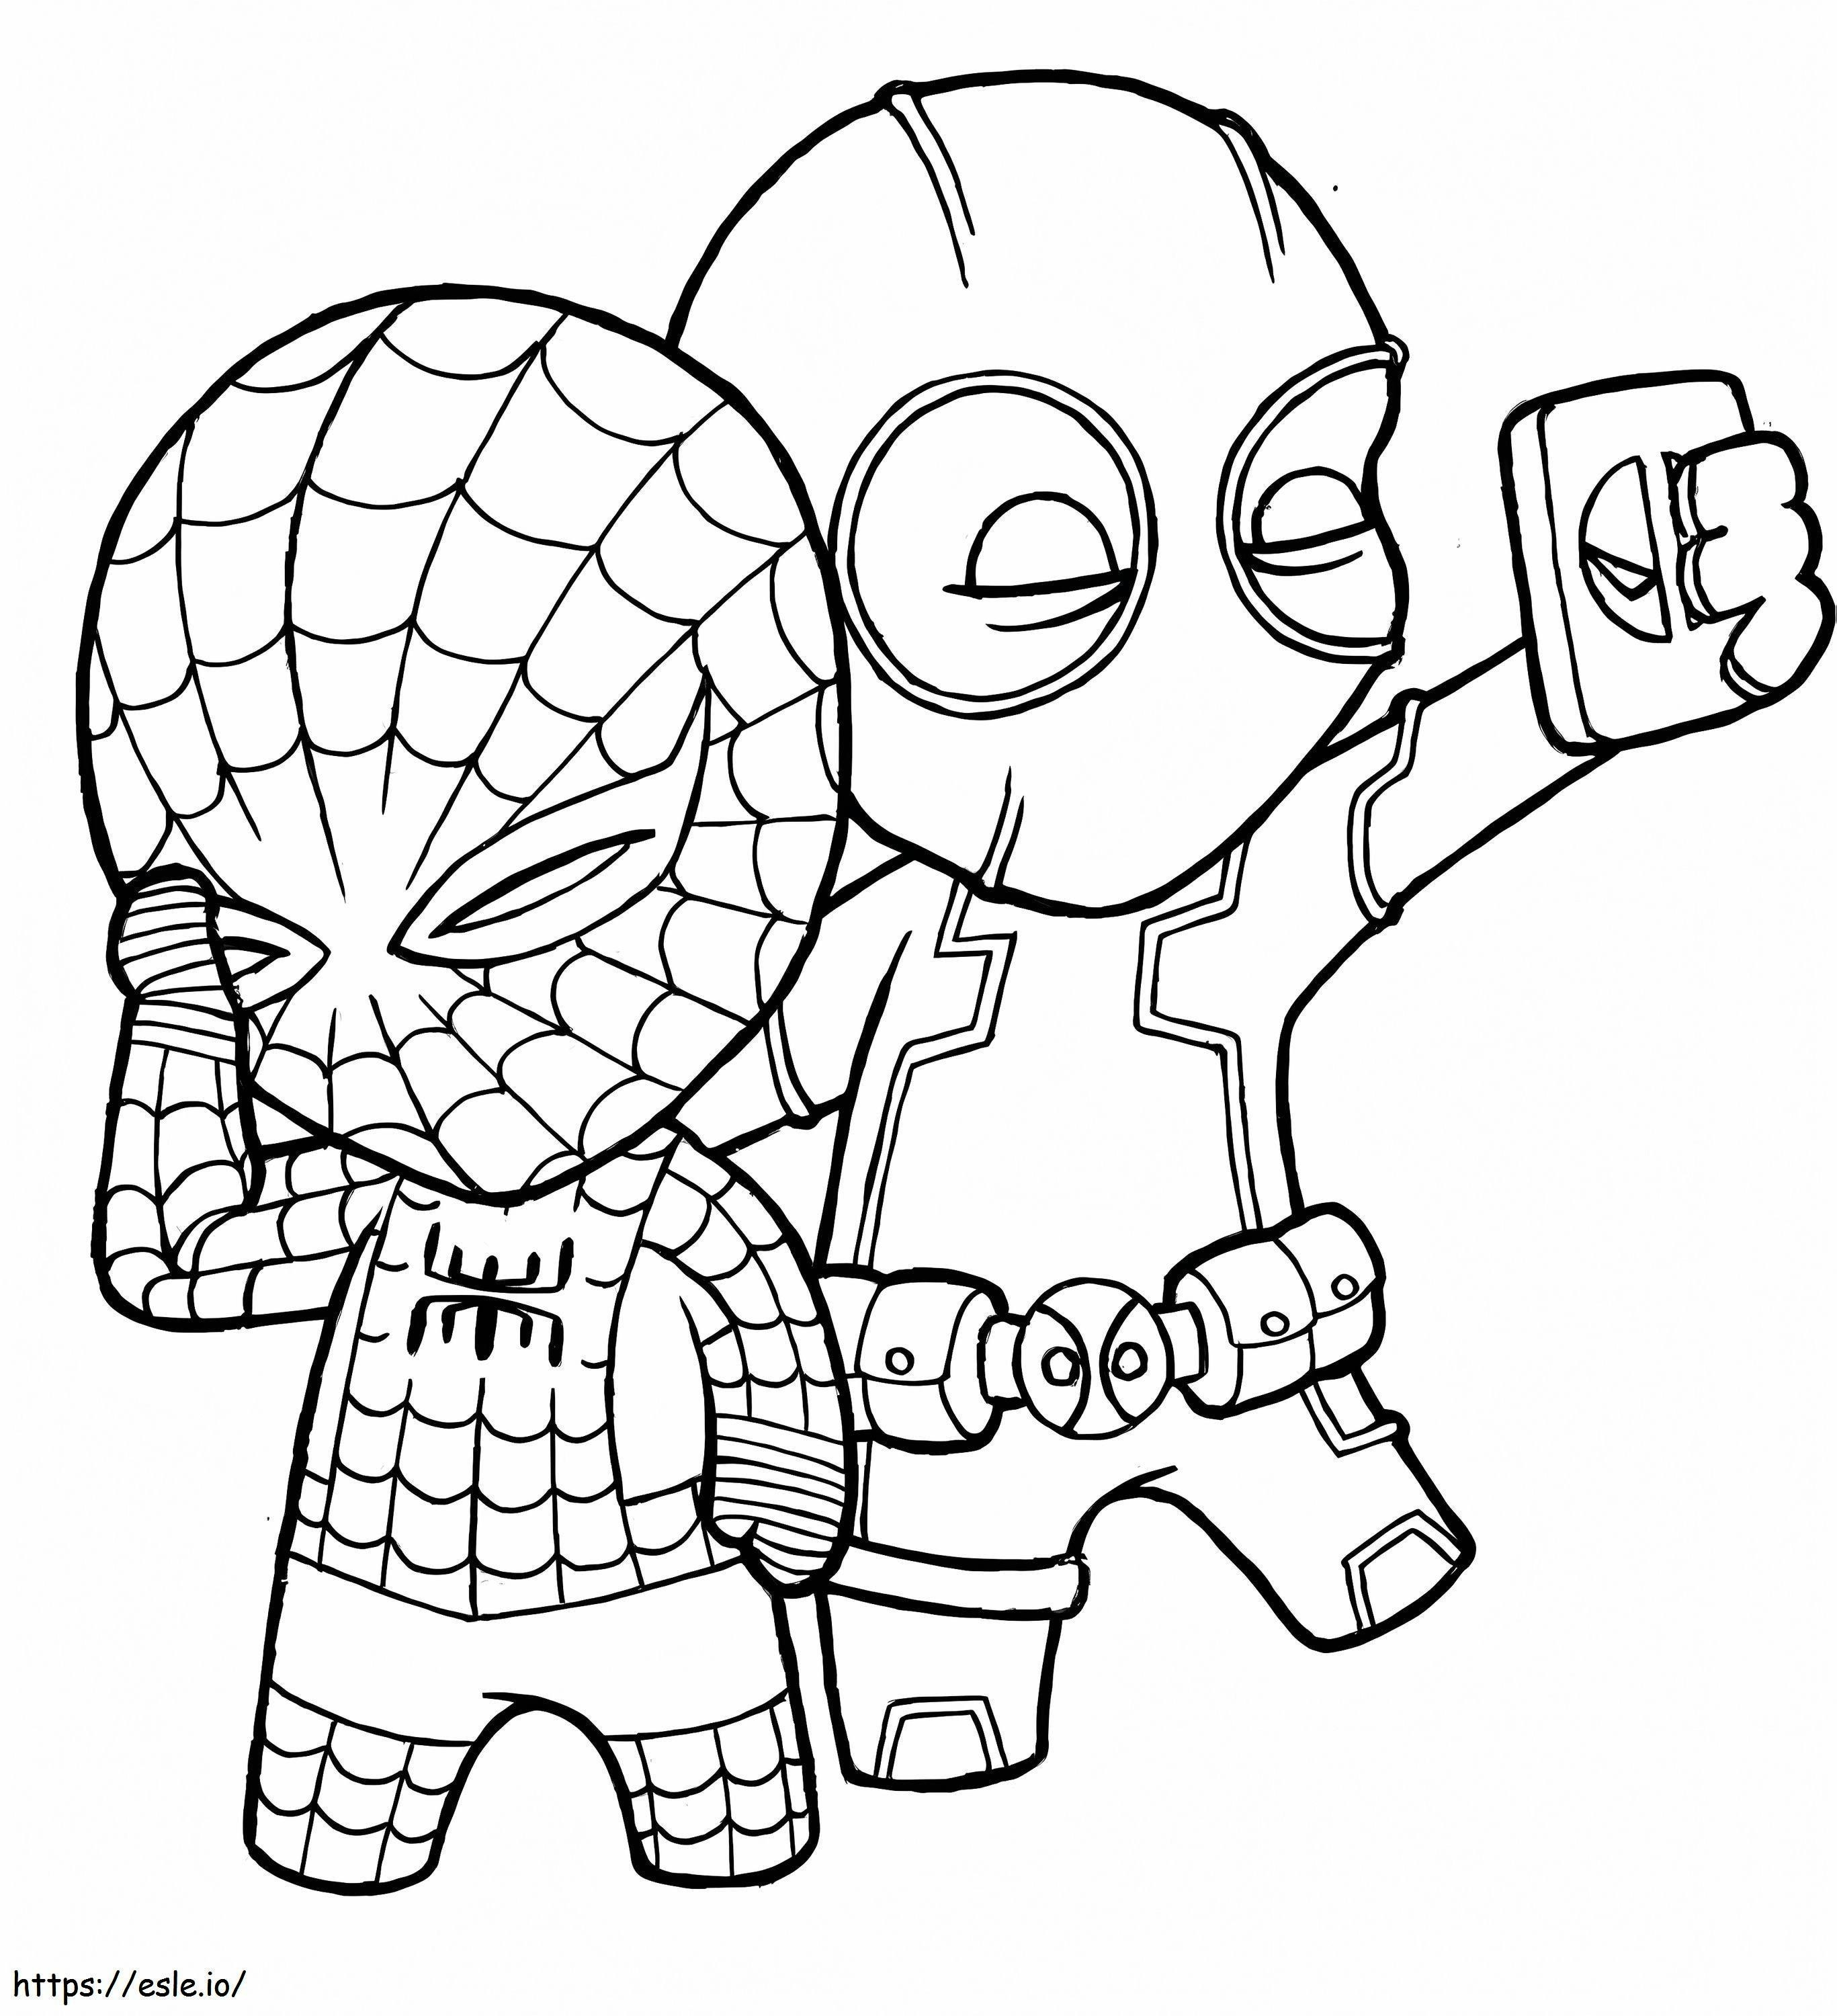 Coloriage Deadpool et Spiderman à imprimer dessin